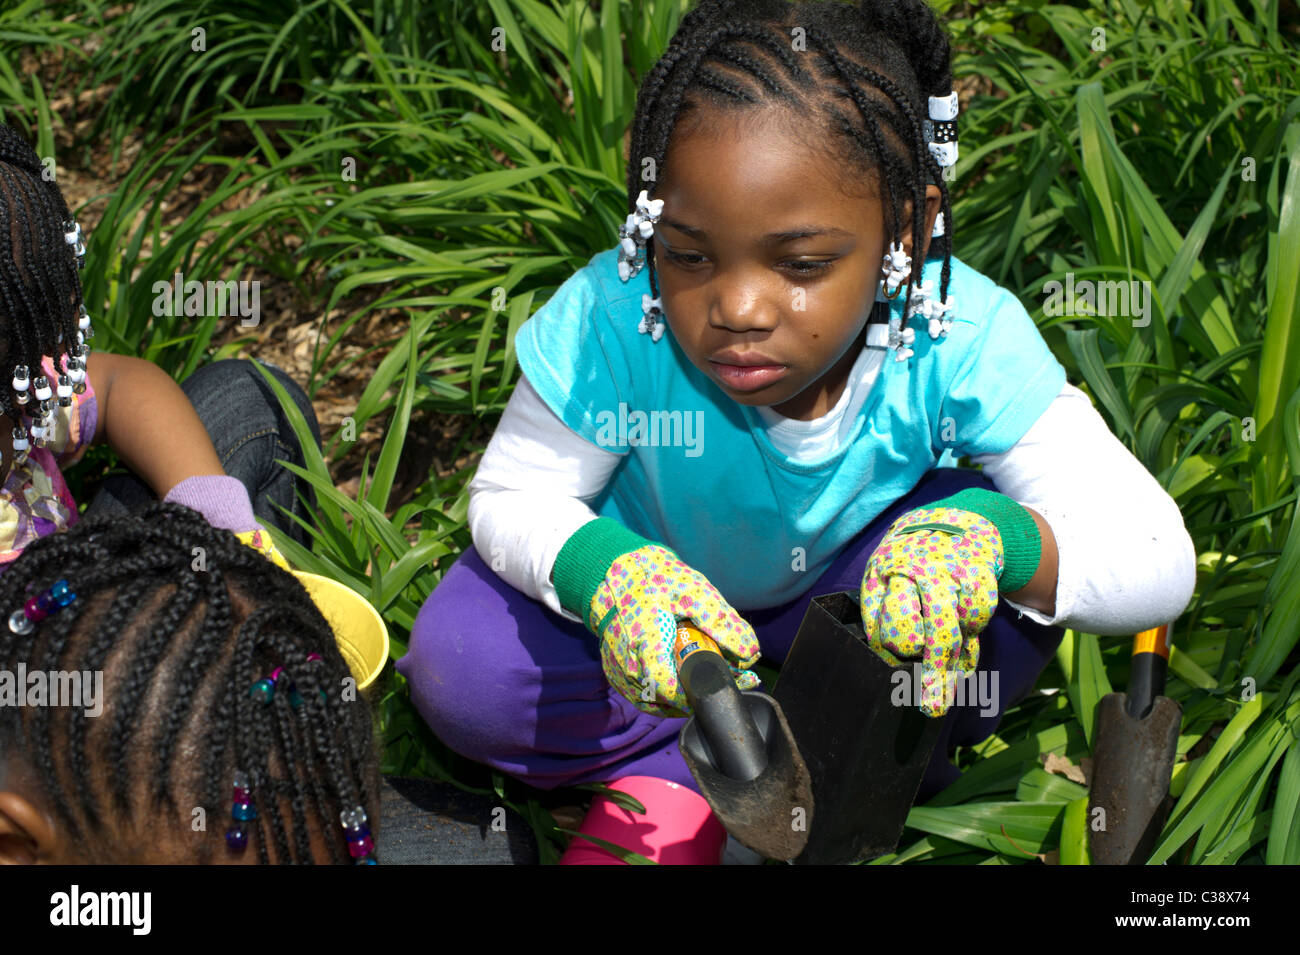 Girl Scouts et les Brownies patrimoine végétal roses dans Mt. Morris Park dans le quartier de Harlem Heritage Rose à New York Banque D'Images